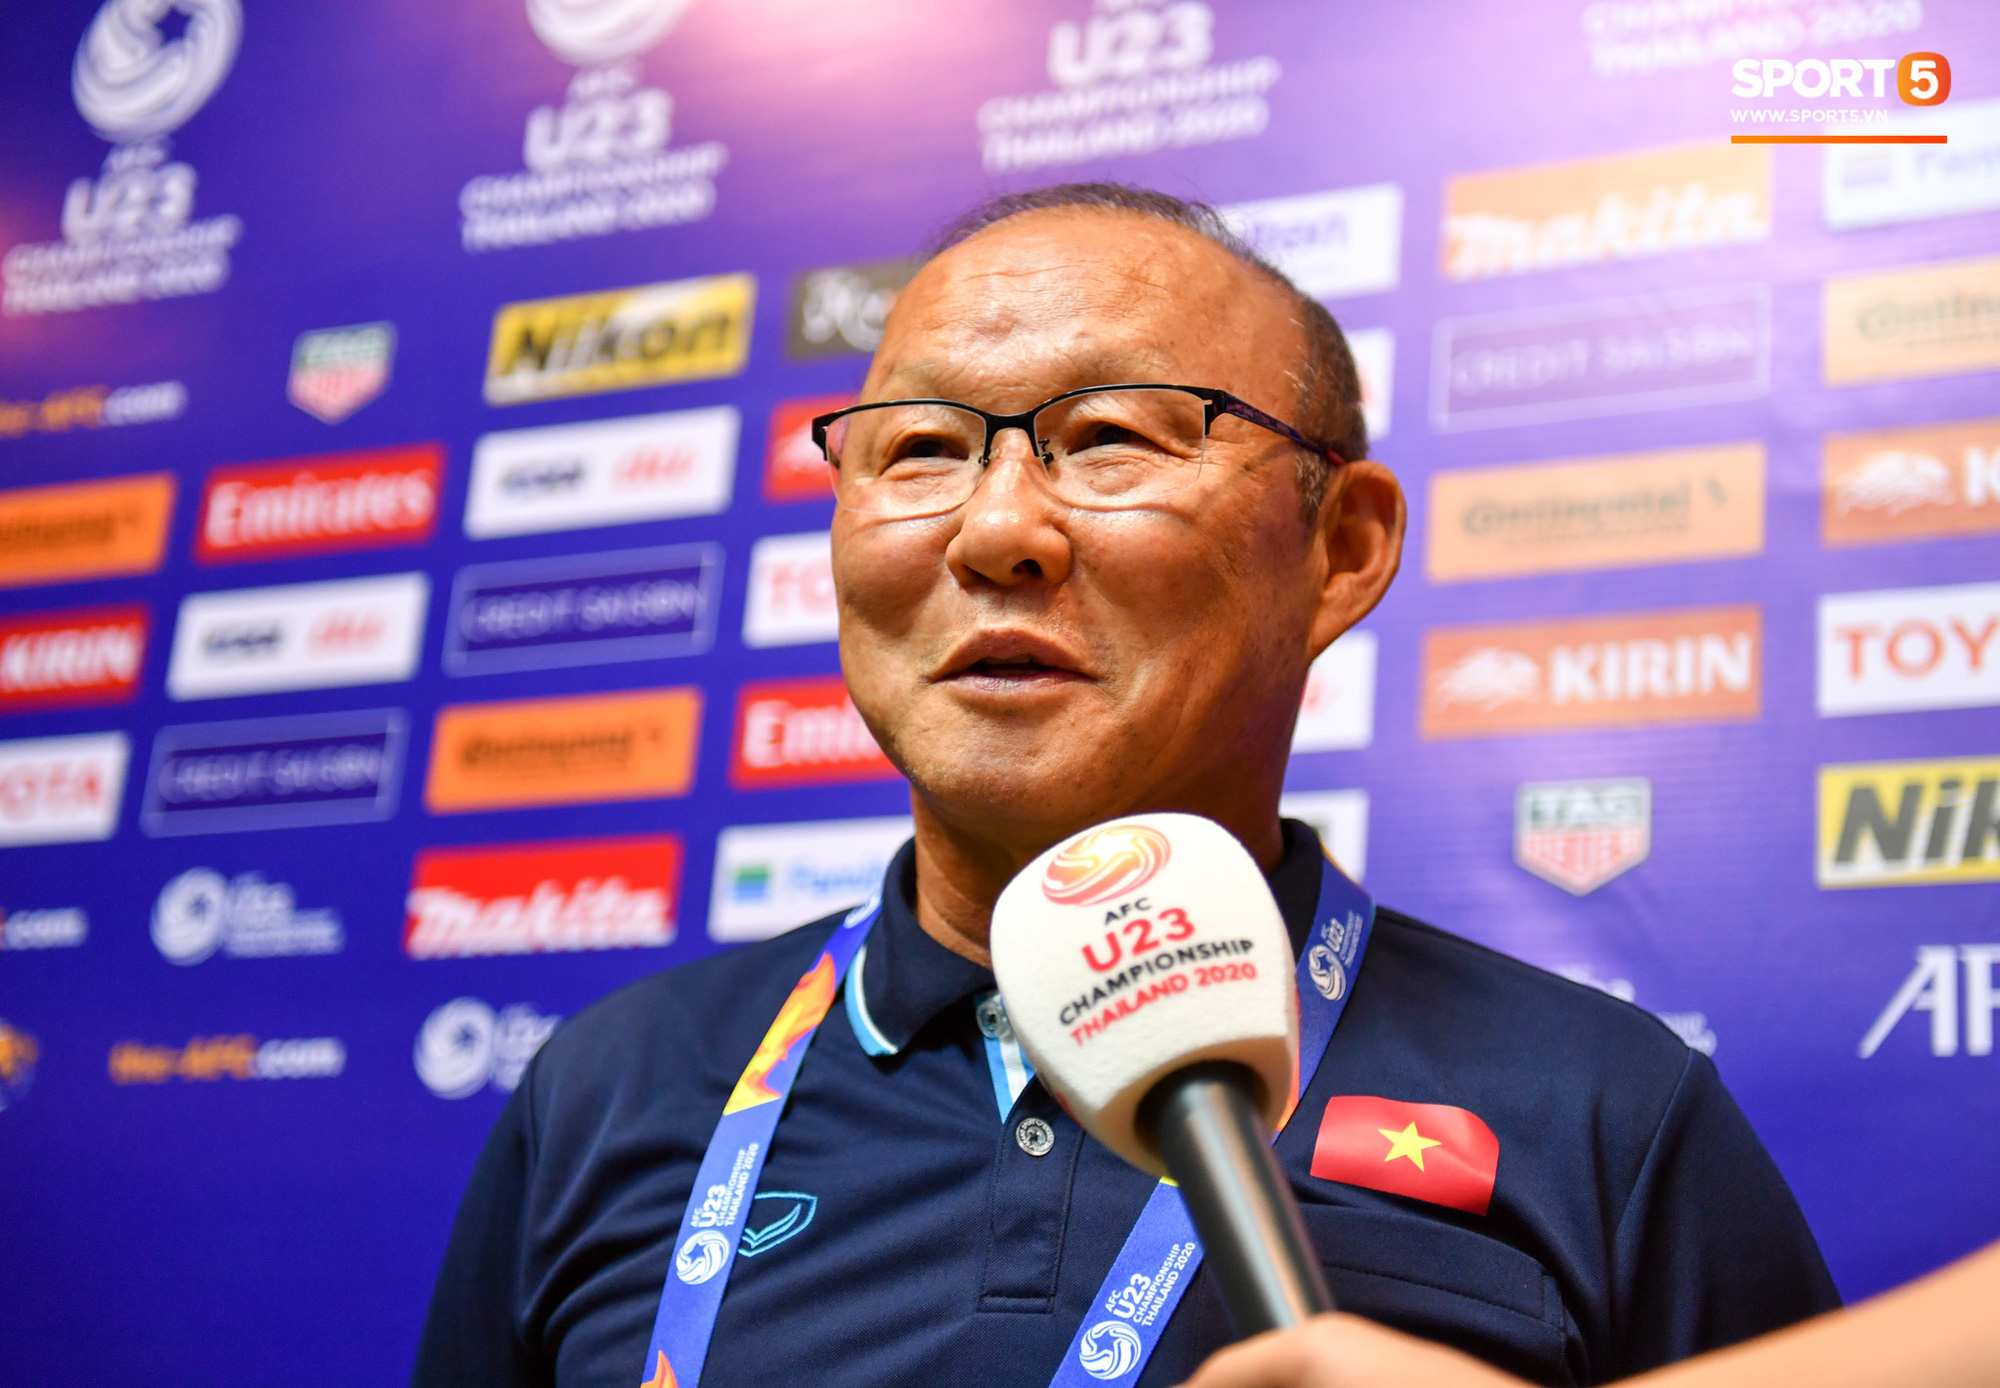 HLV Park Hang-seo: U23 Việt Nam còn thiếu kinh nghiệm, 1 điểm trước UAE là tốt rồi - Ảnh 1.